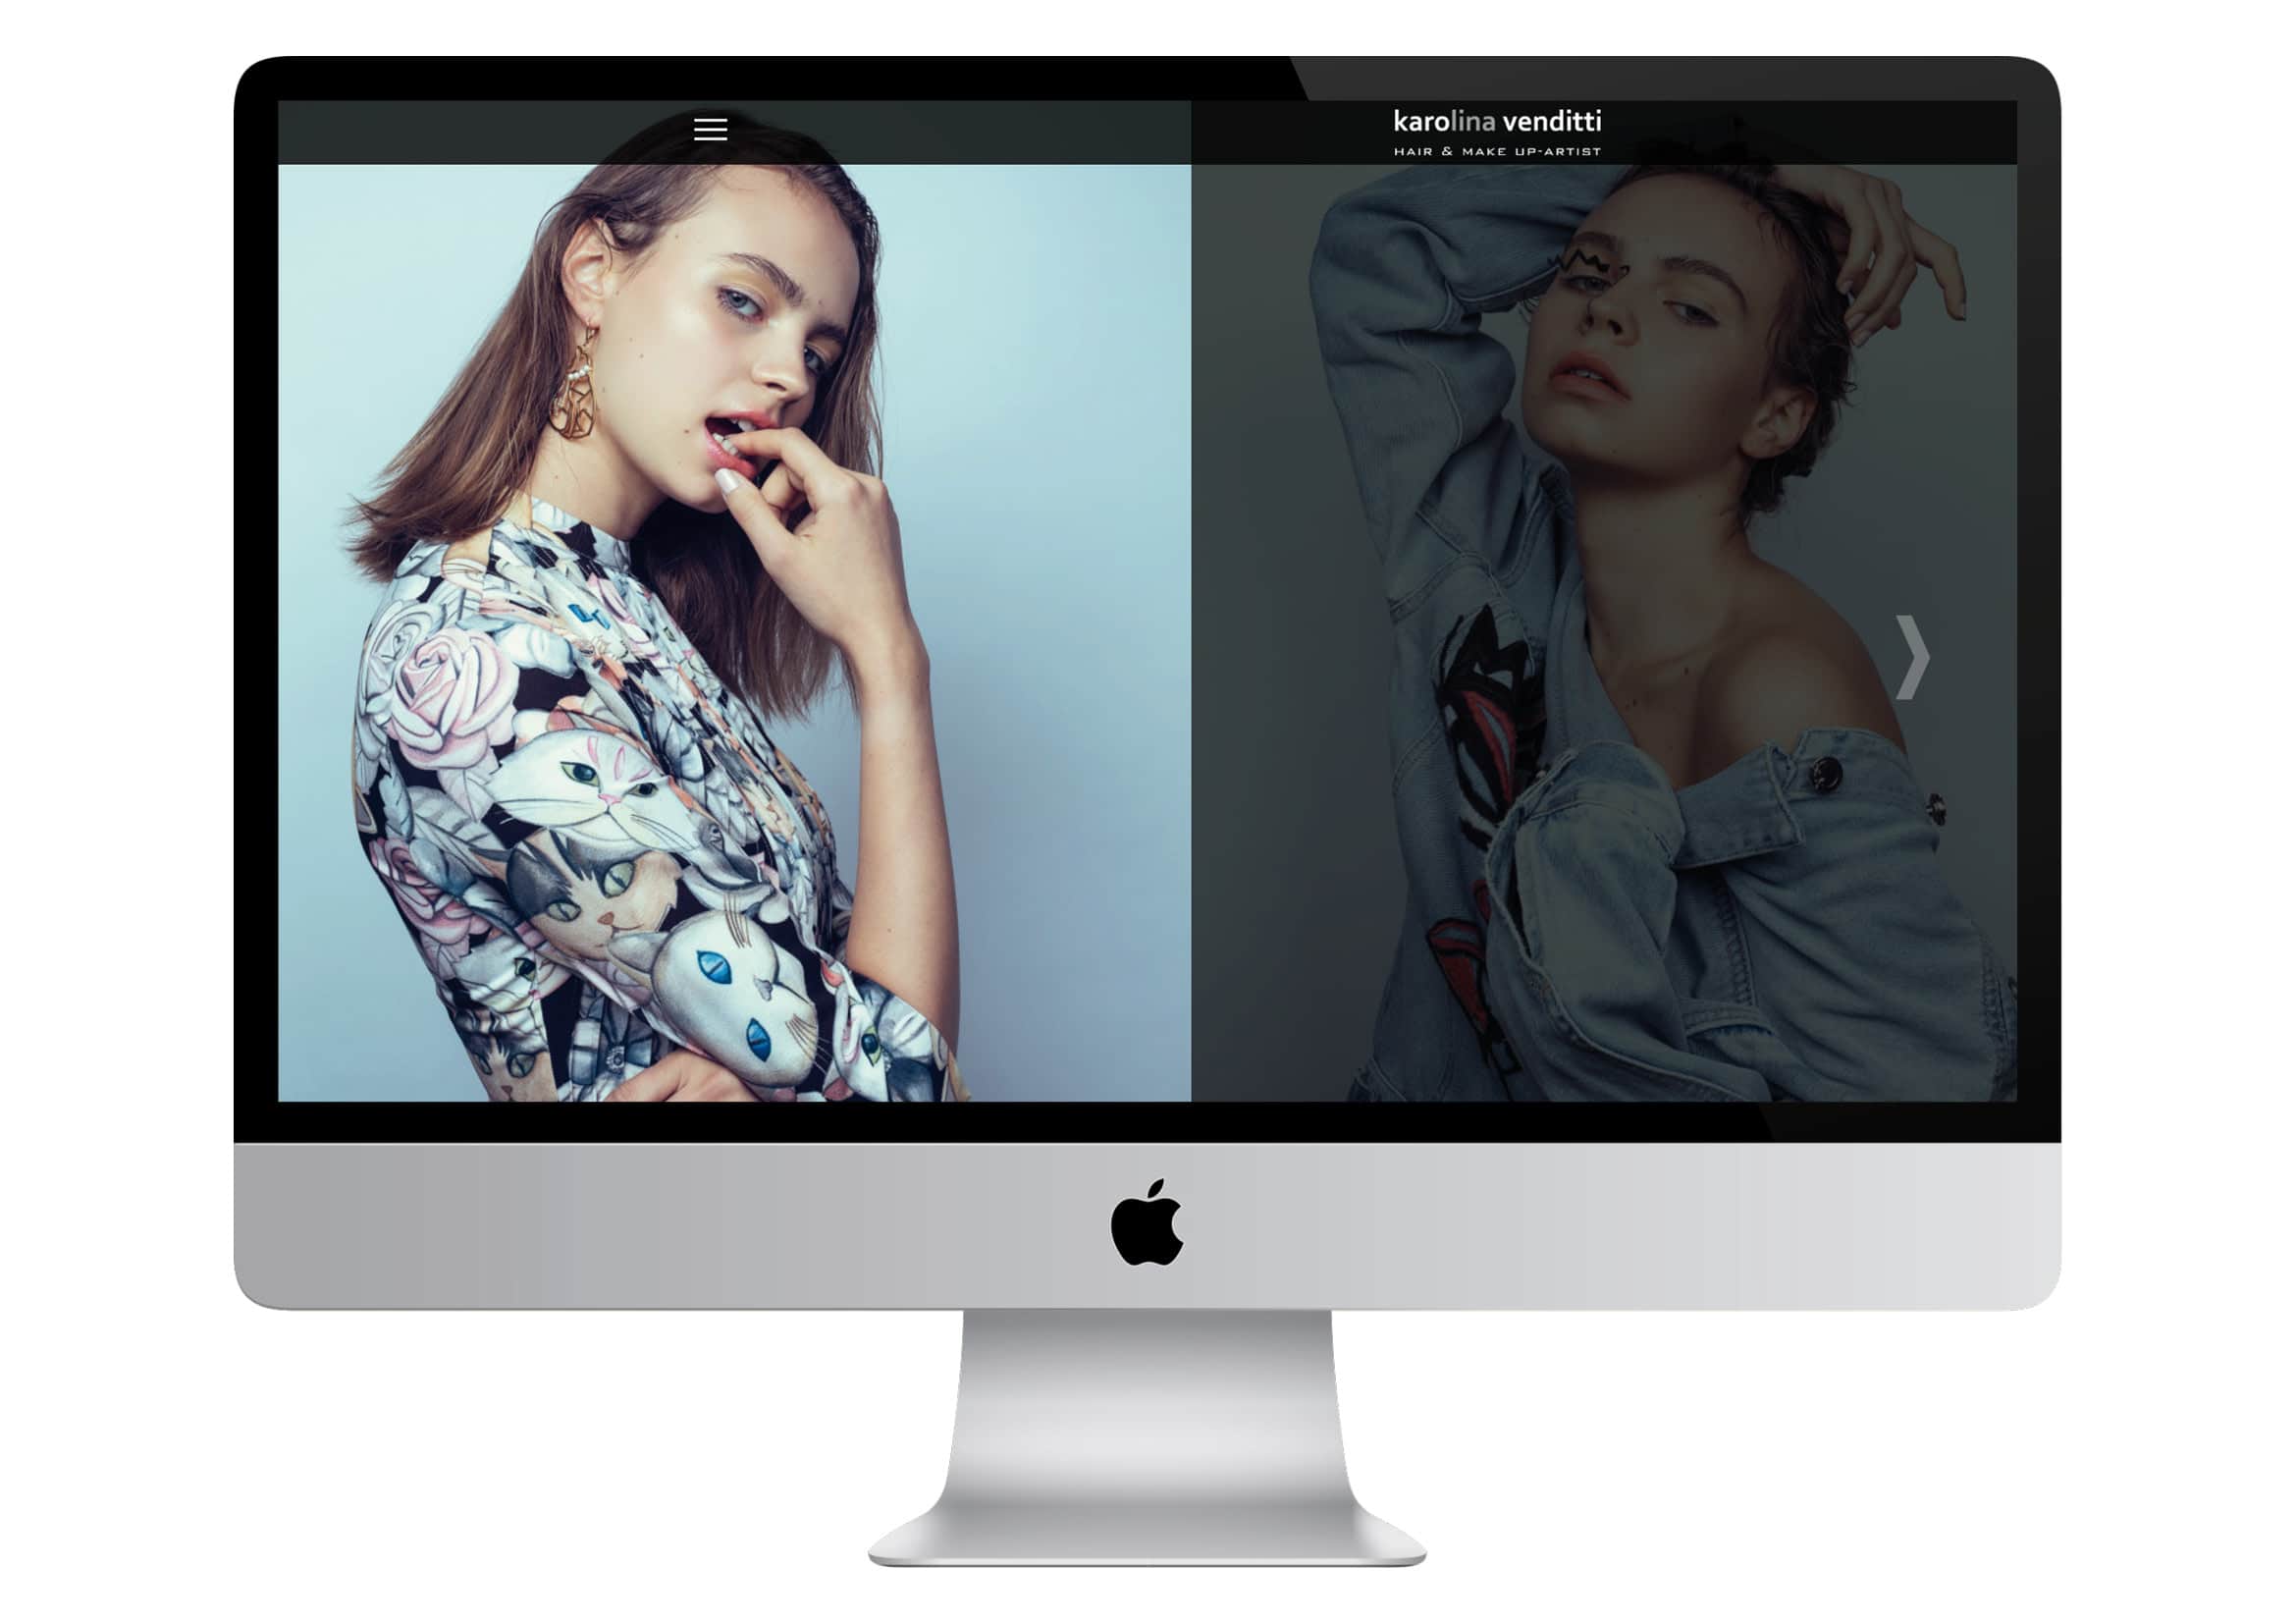 Webdesign und Programmierung Homepage für Visagistin Karolina Venditti Hair & Make Up-Artist “Professional Styling” durch Webdesigner Ronald Wissler